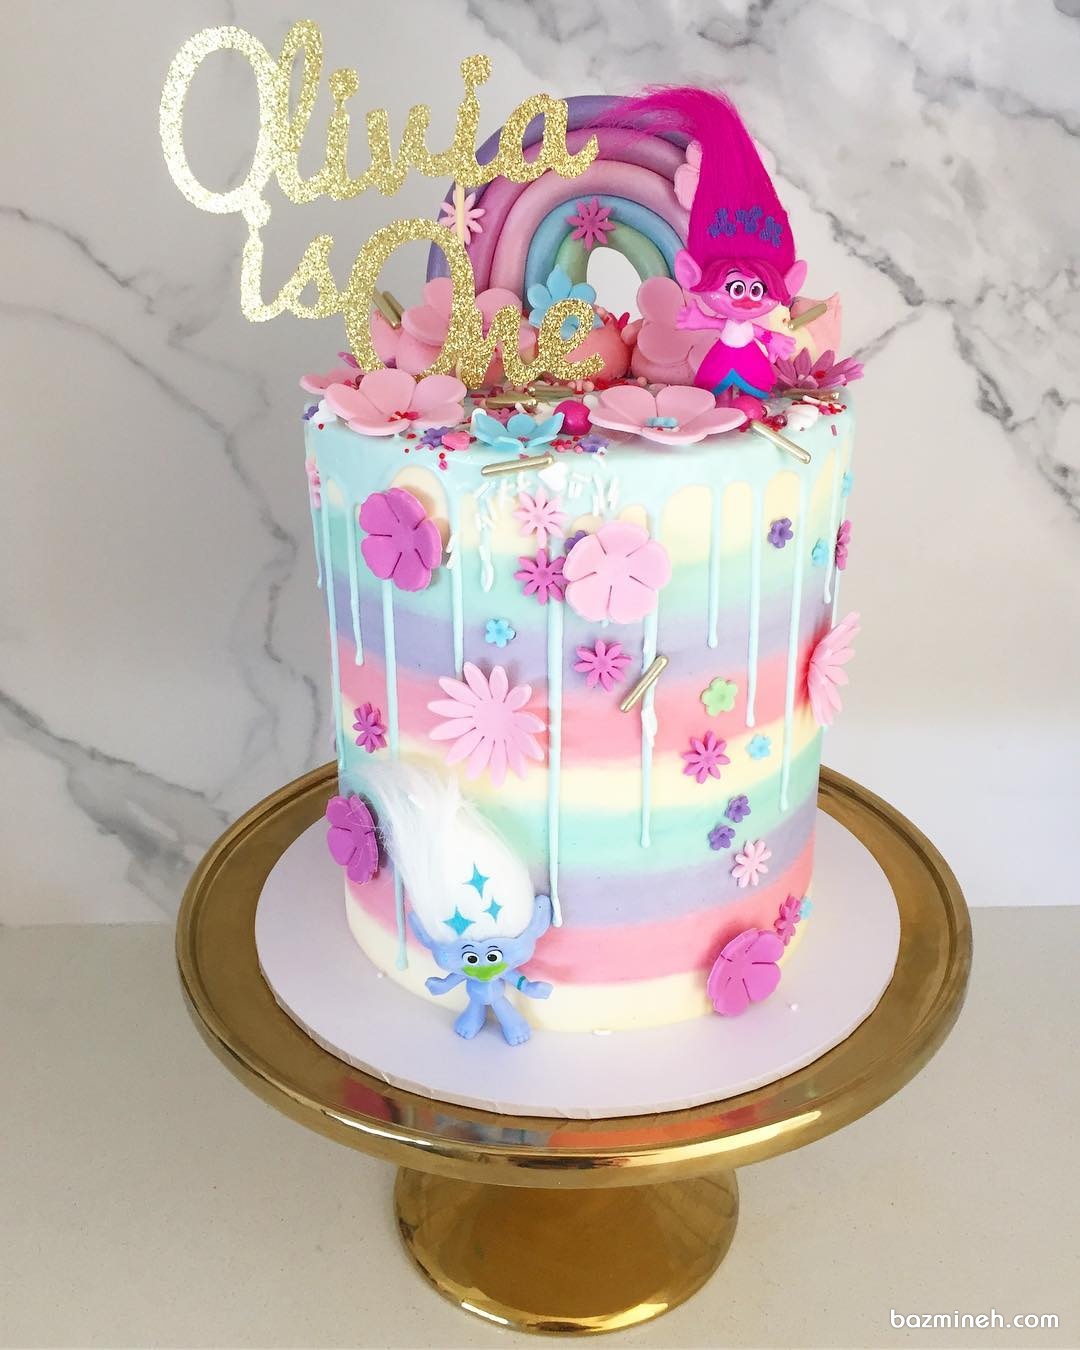 مینی کیک جشن تولد دخترانه با تم ترول ها (Trolls) و رنگین کمان